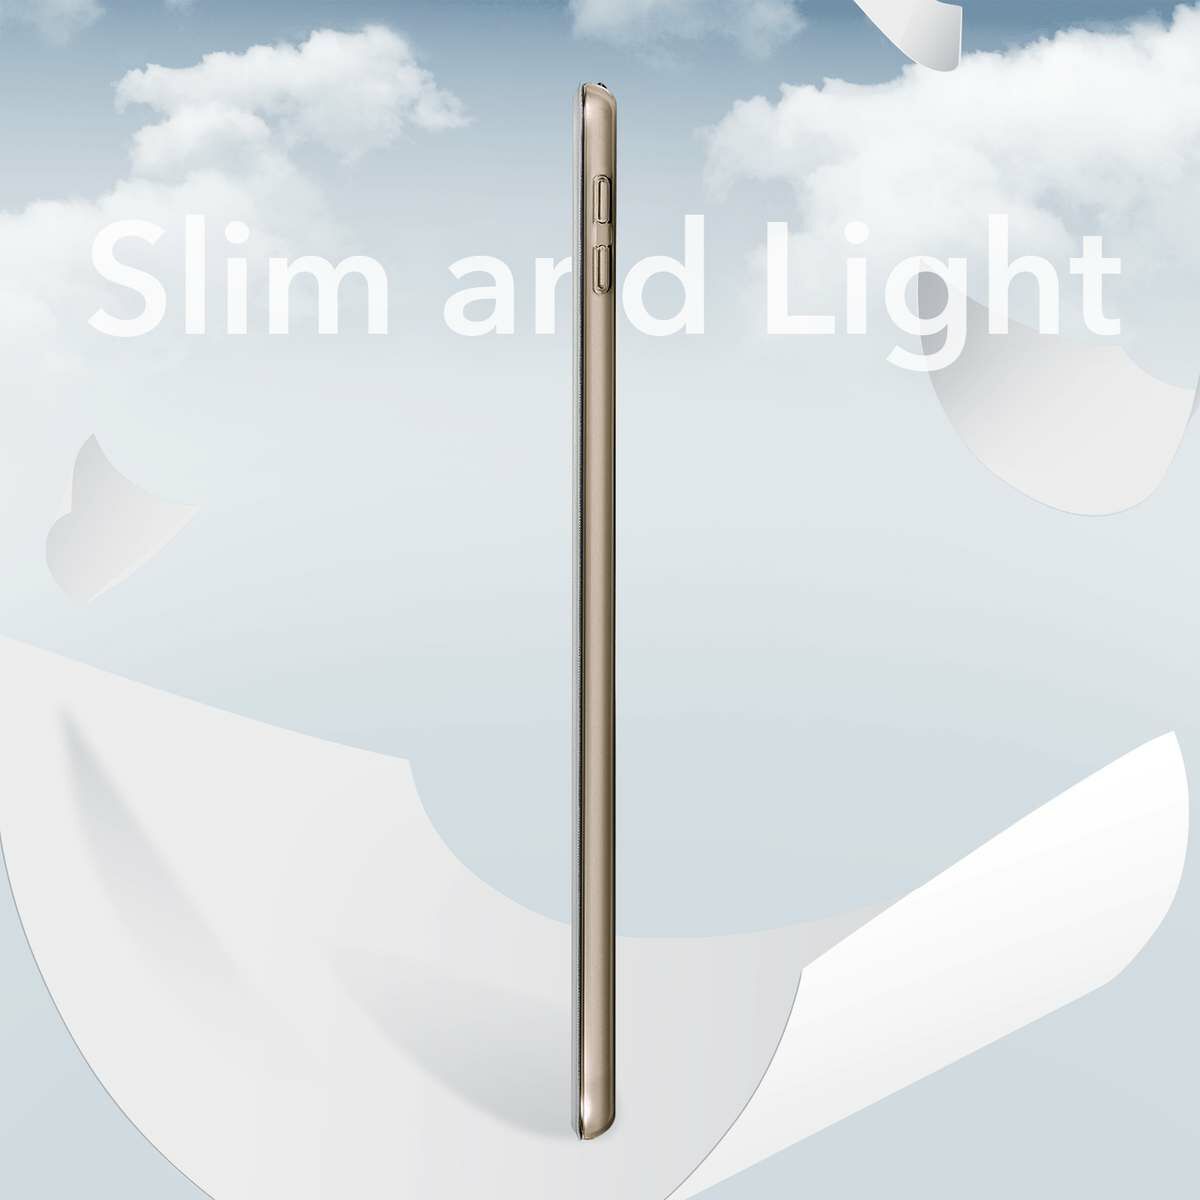 ESR iPad 10.2 tok, Ascend Trifold, ezüst/szürke